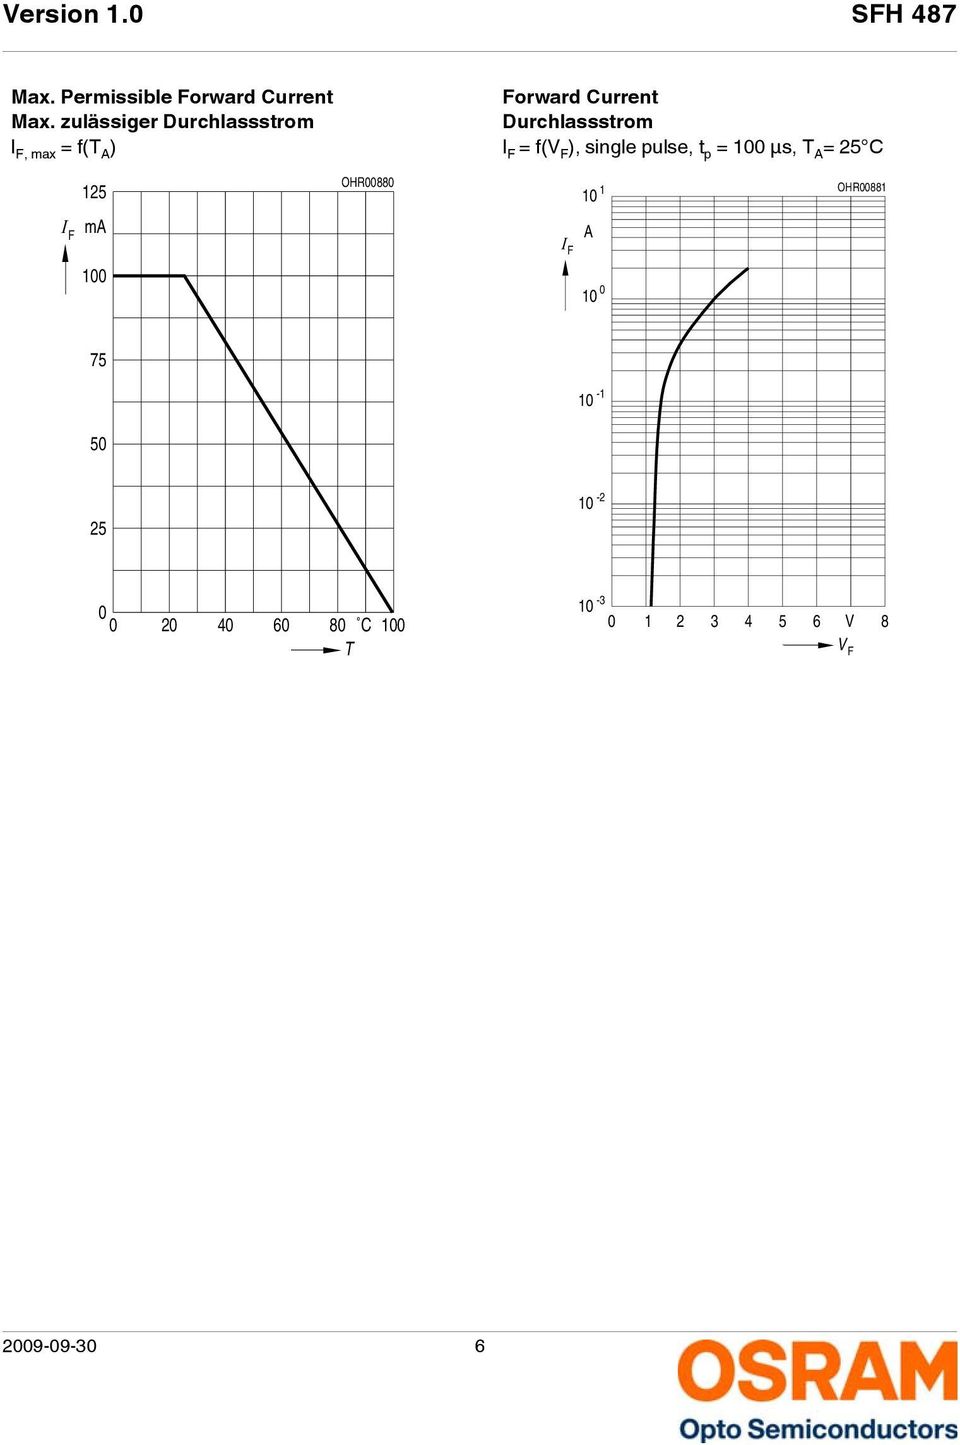 Durchlassstrom I F = f(v F ), single pulse, t p = µs, T A = 25